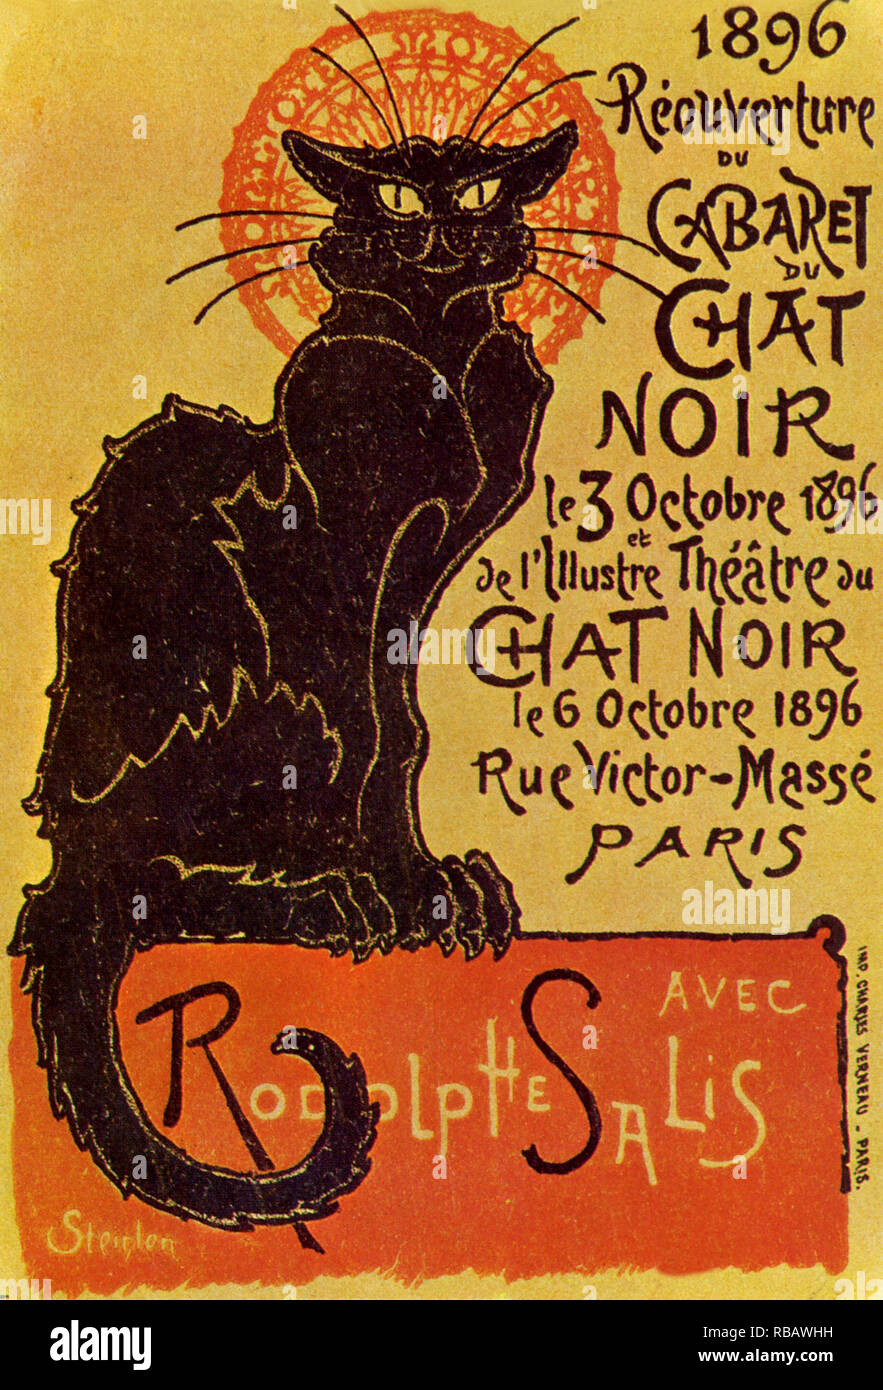 Cabaret du chat noir. Stock Photo